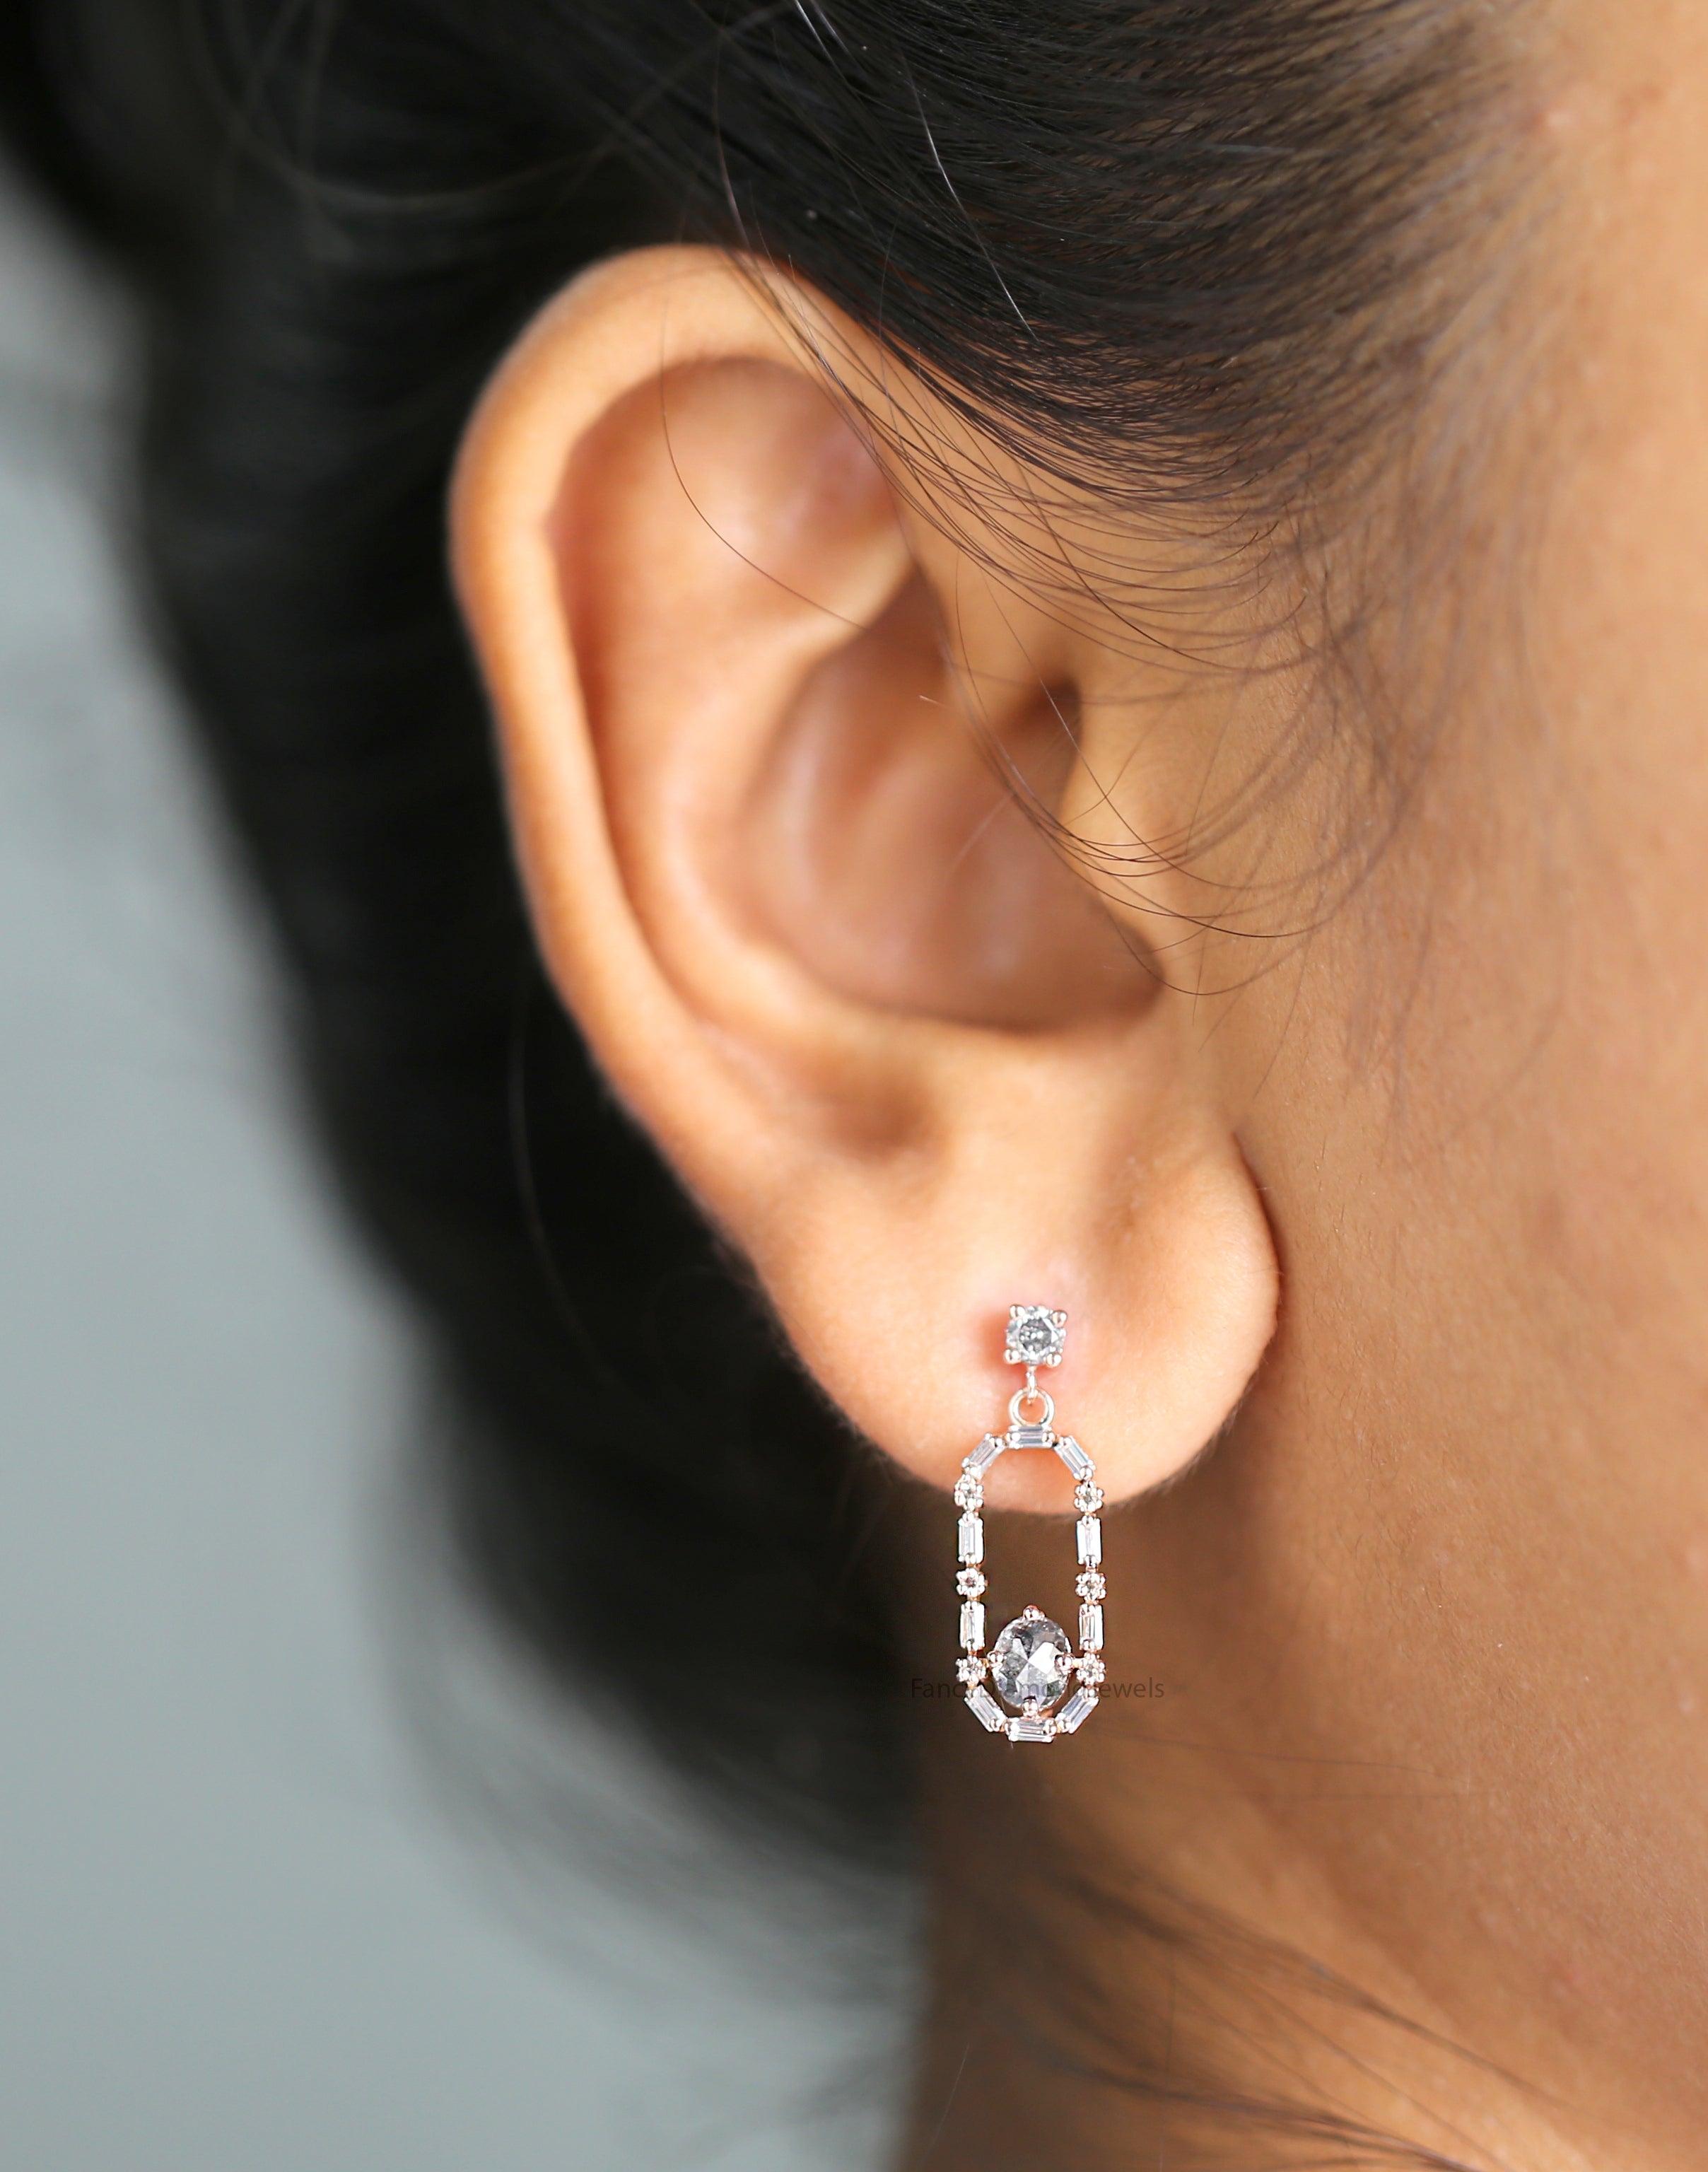 Oval Salt And Pepper Diamond Earring, Oval Shape Earring, Prong Earring, Engagement Earring, Earlobe Earrings, Earrings Jewelry, KDL502